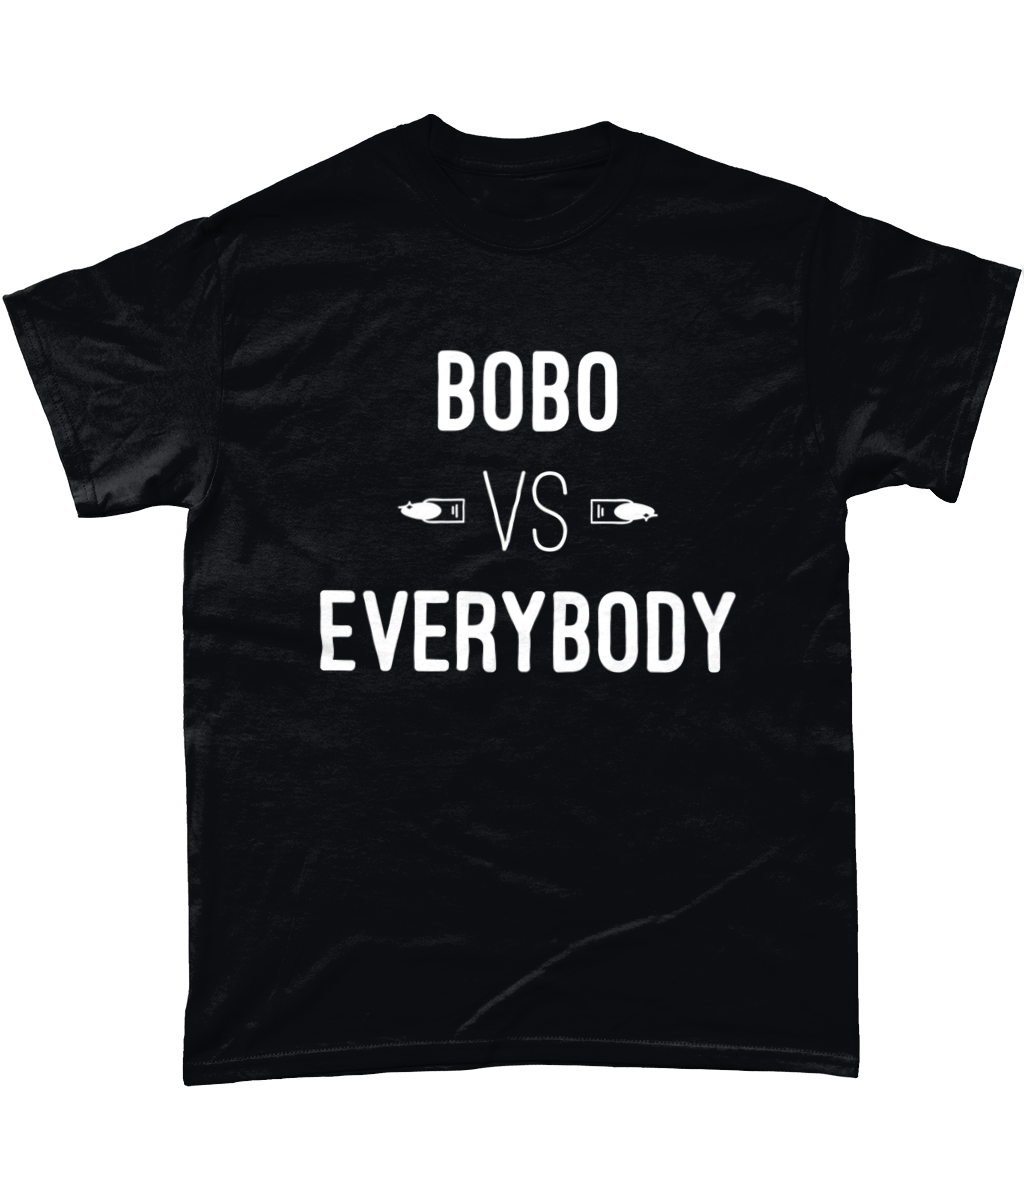 Scarlett Bobo - Bobo Vs Everybody White T-Shirt - SNATCHED MERCH